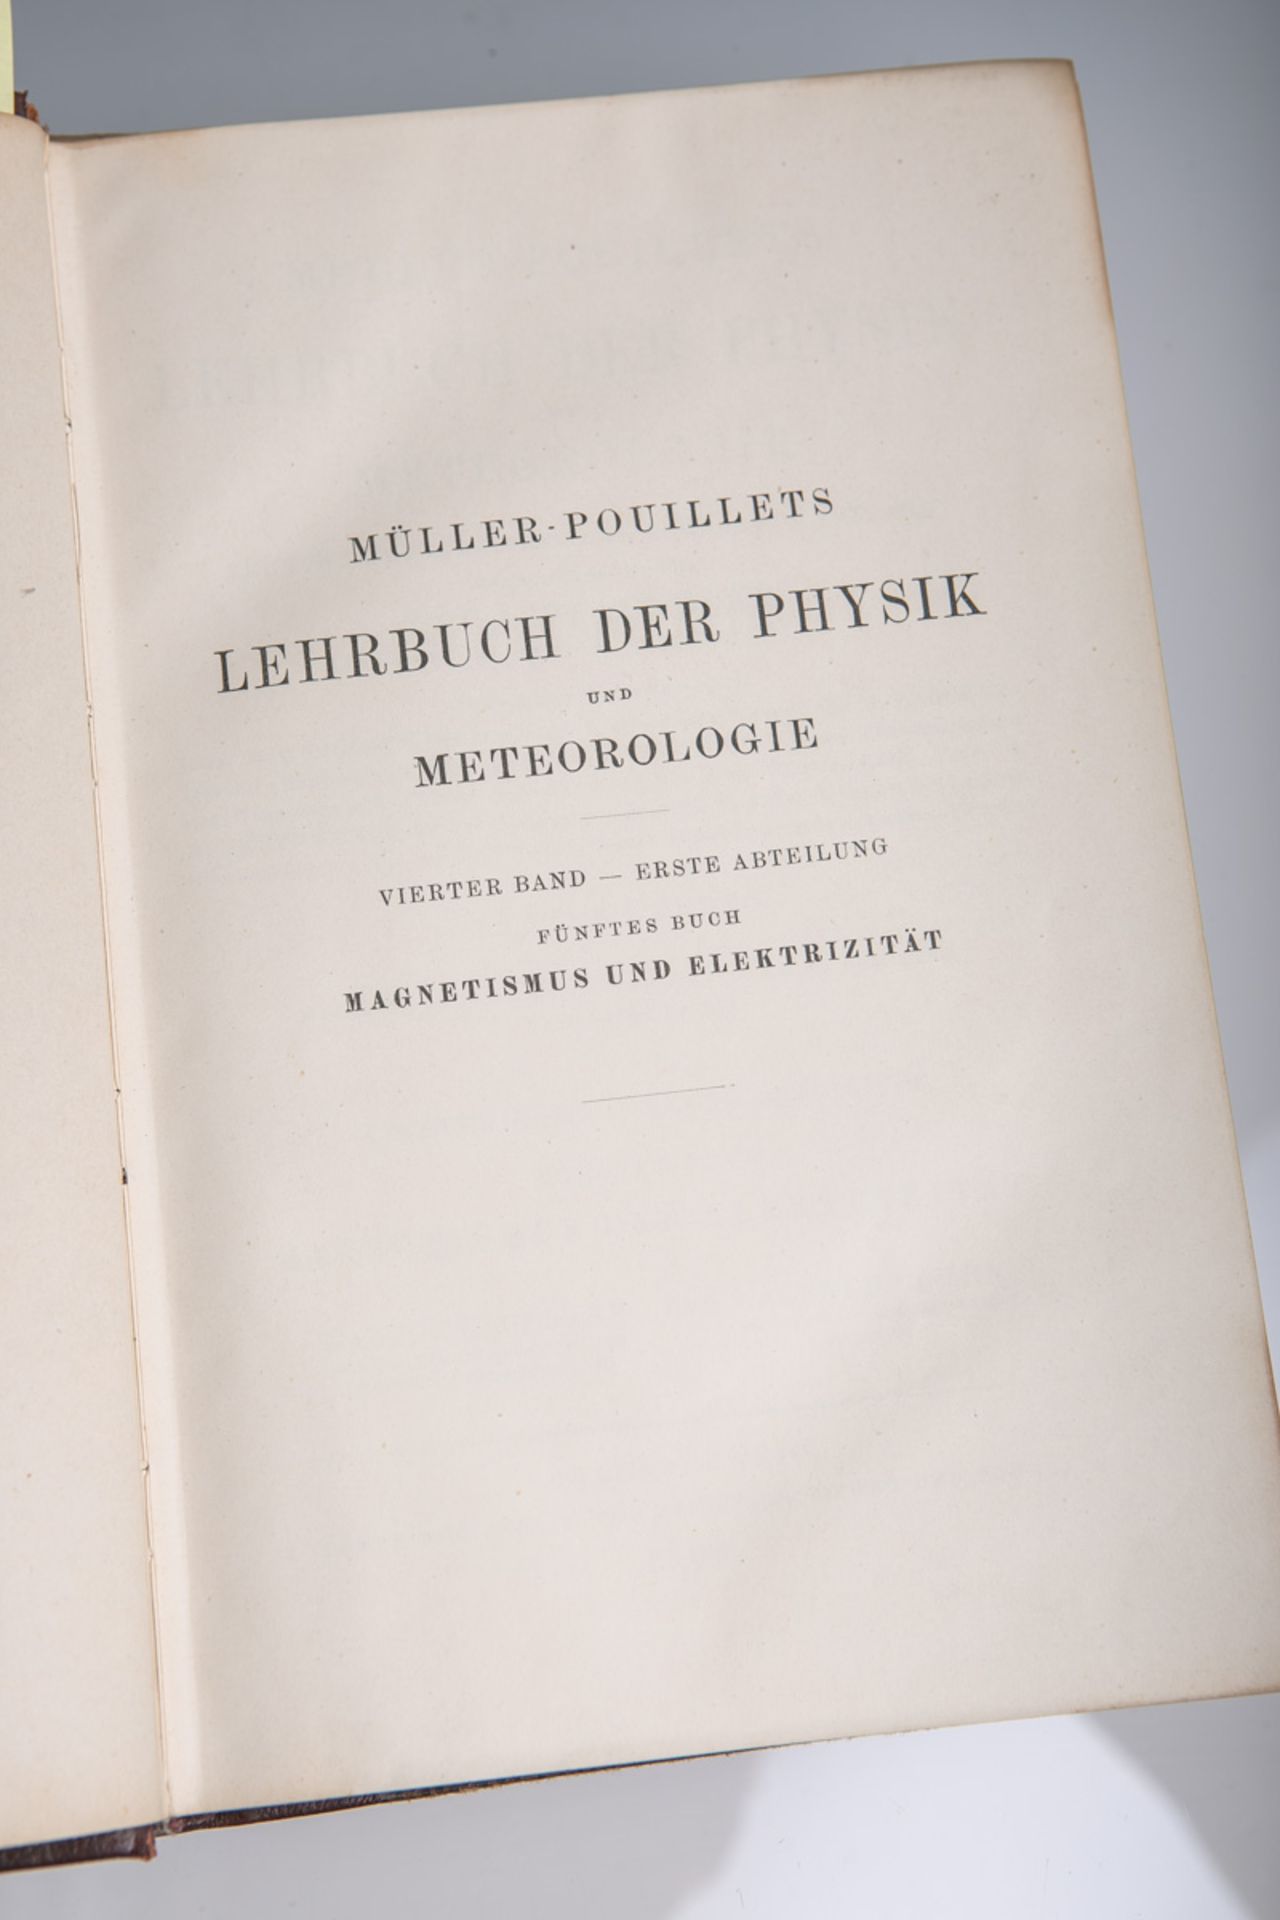 Pfaundler, L. (Hrsg.), "Müller-Pouillets Lehrbuch der Physik u. Meteorologie", Band 4.1: